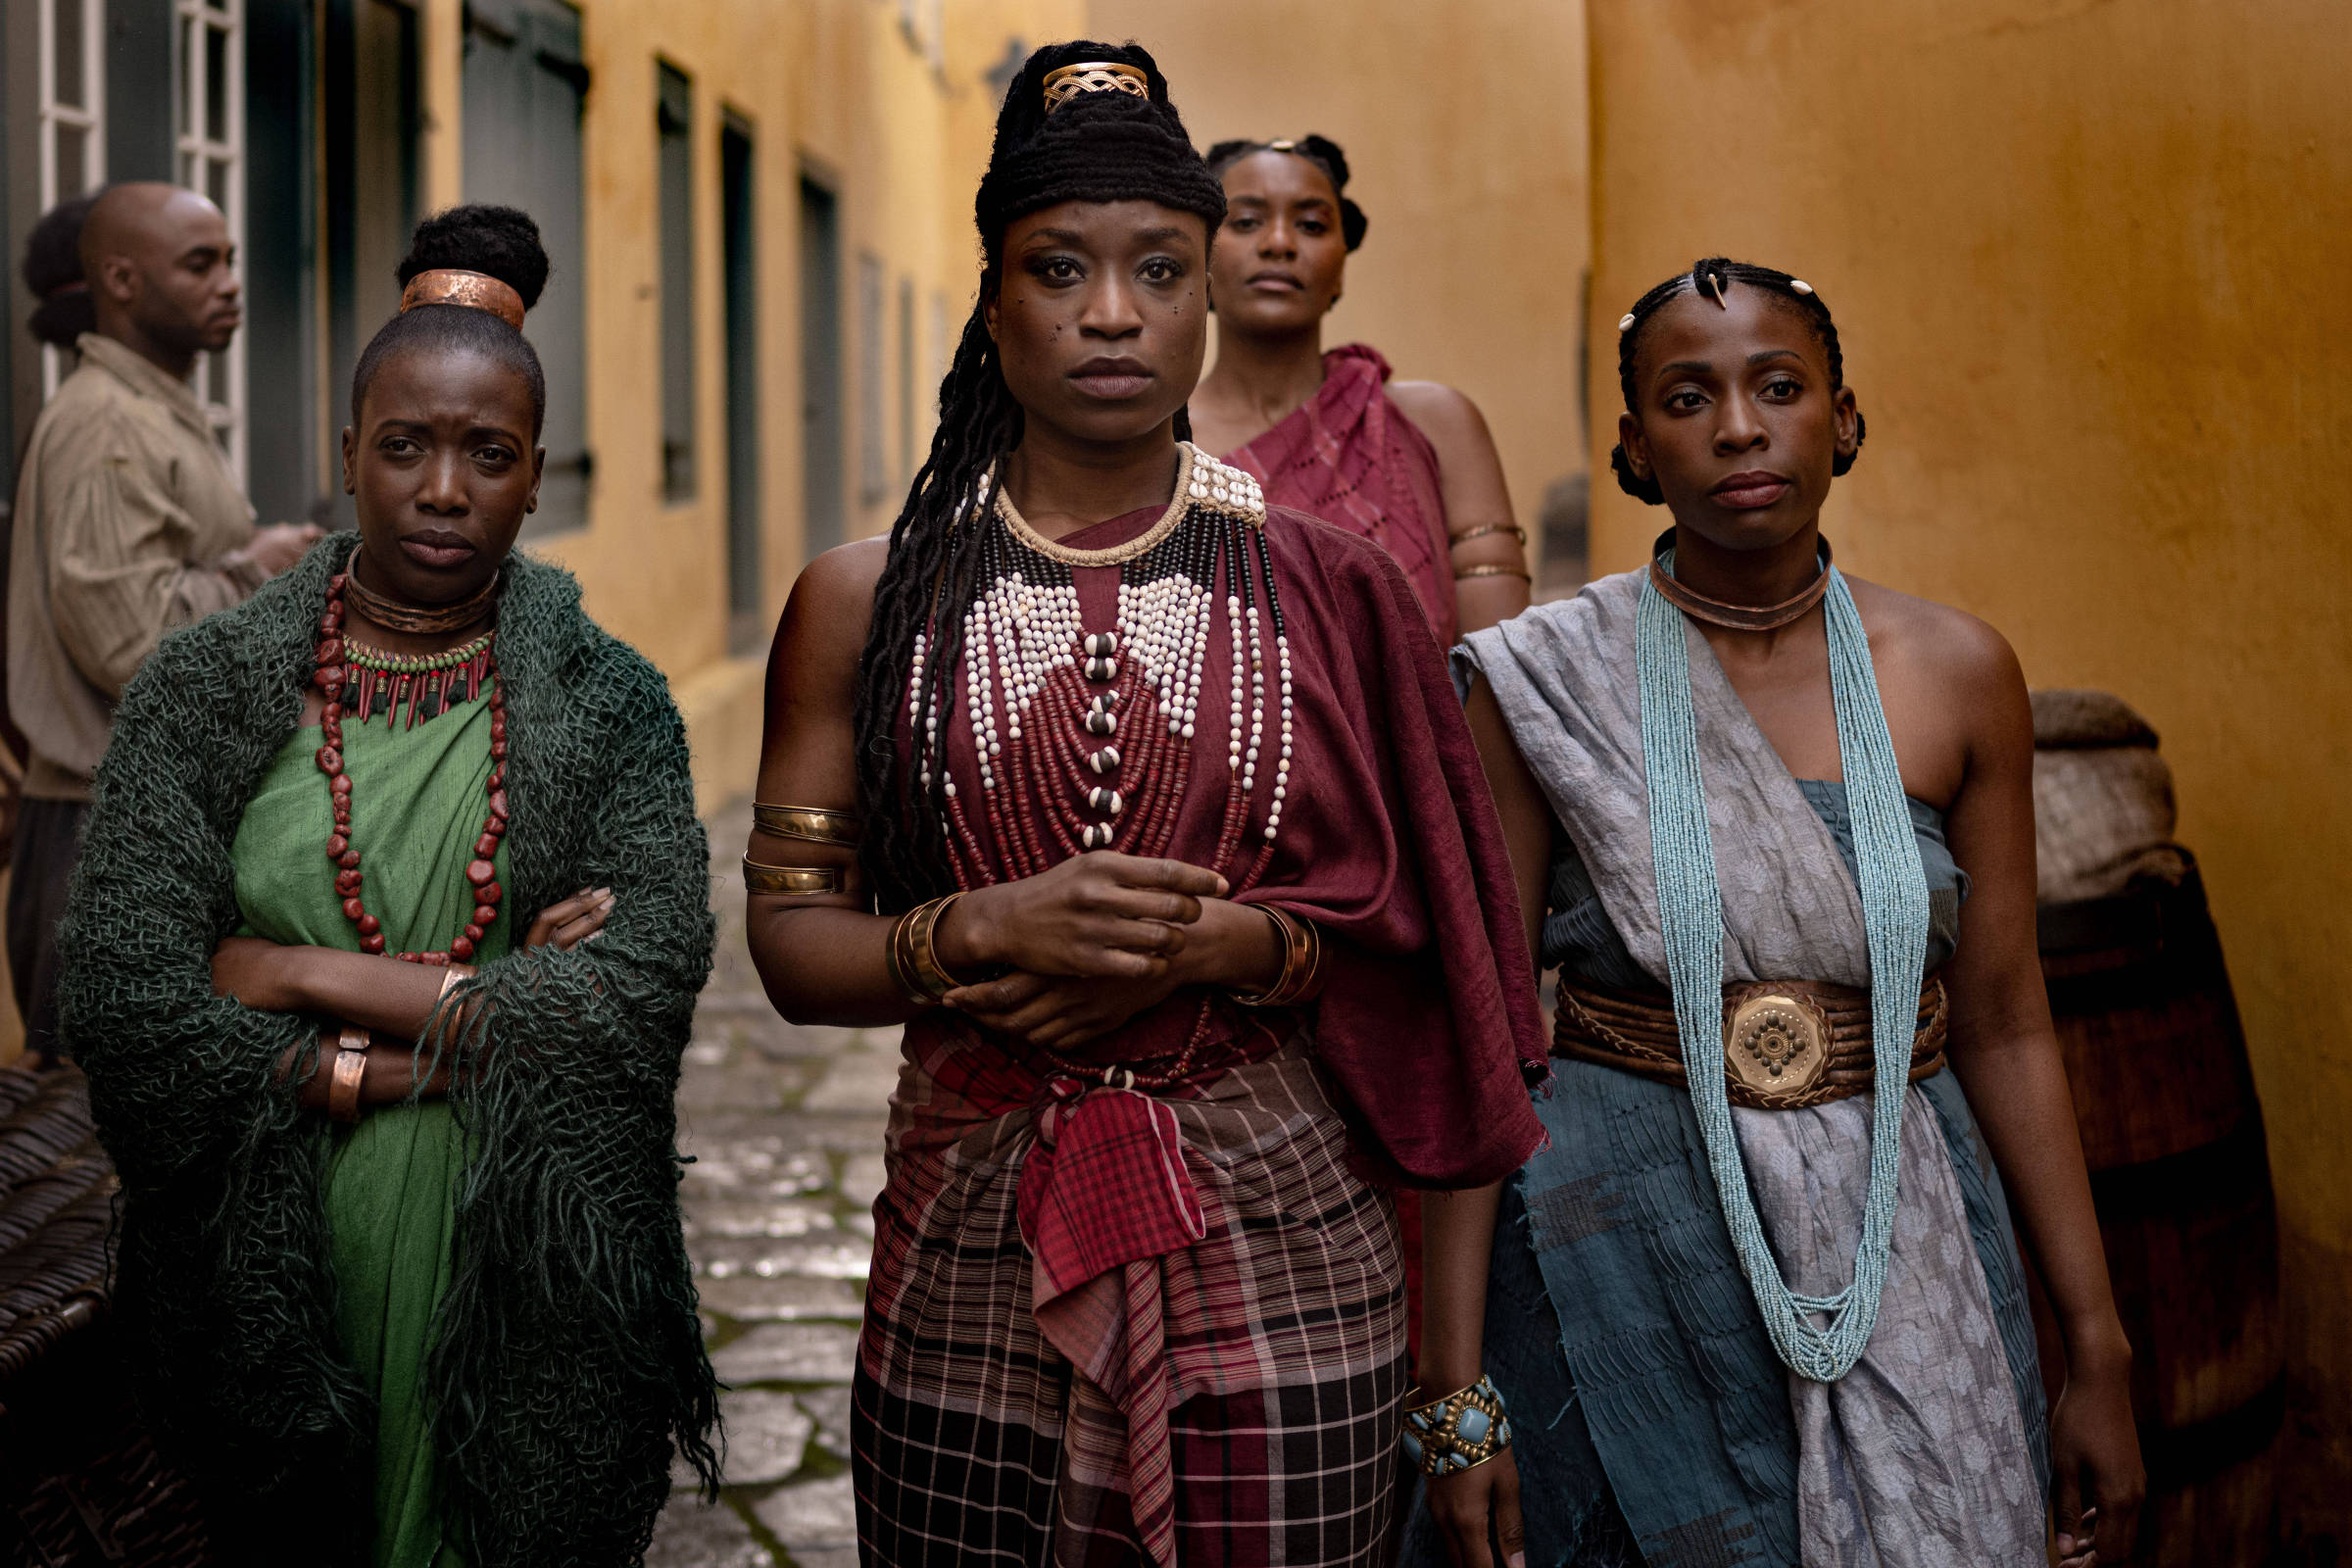 Série da Netflix e exposição redescobrem rainhas africanas - 24/04